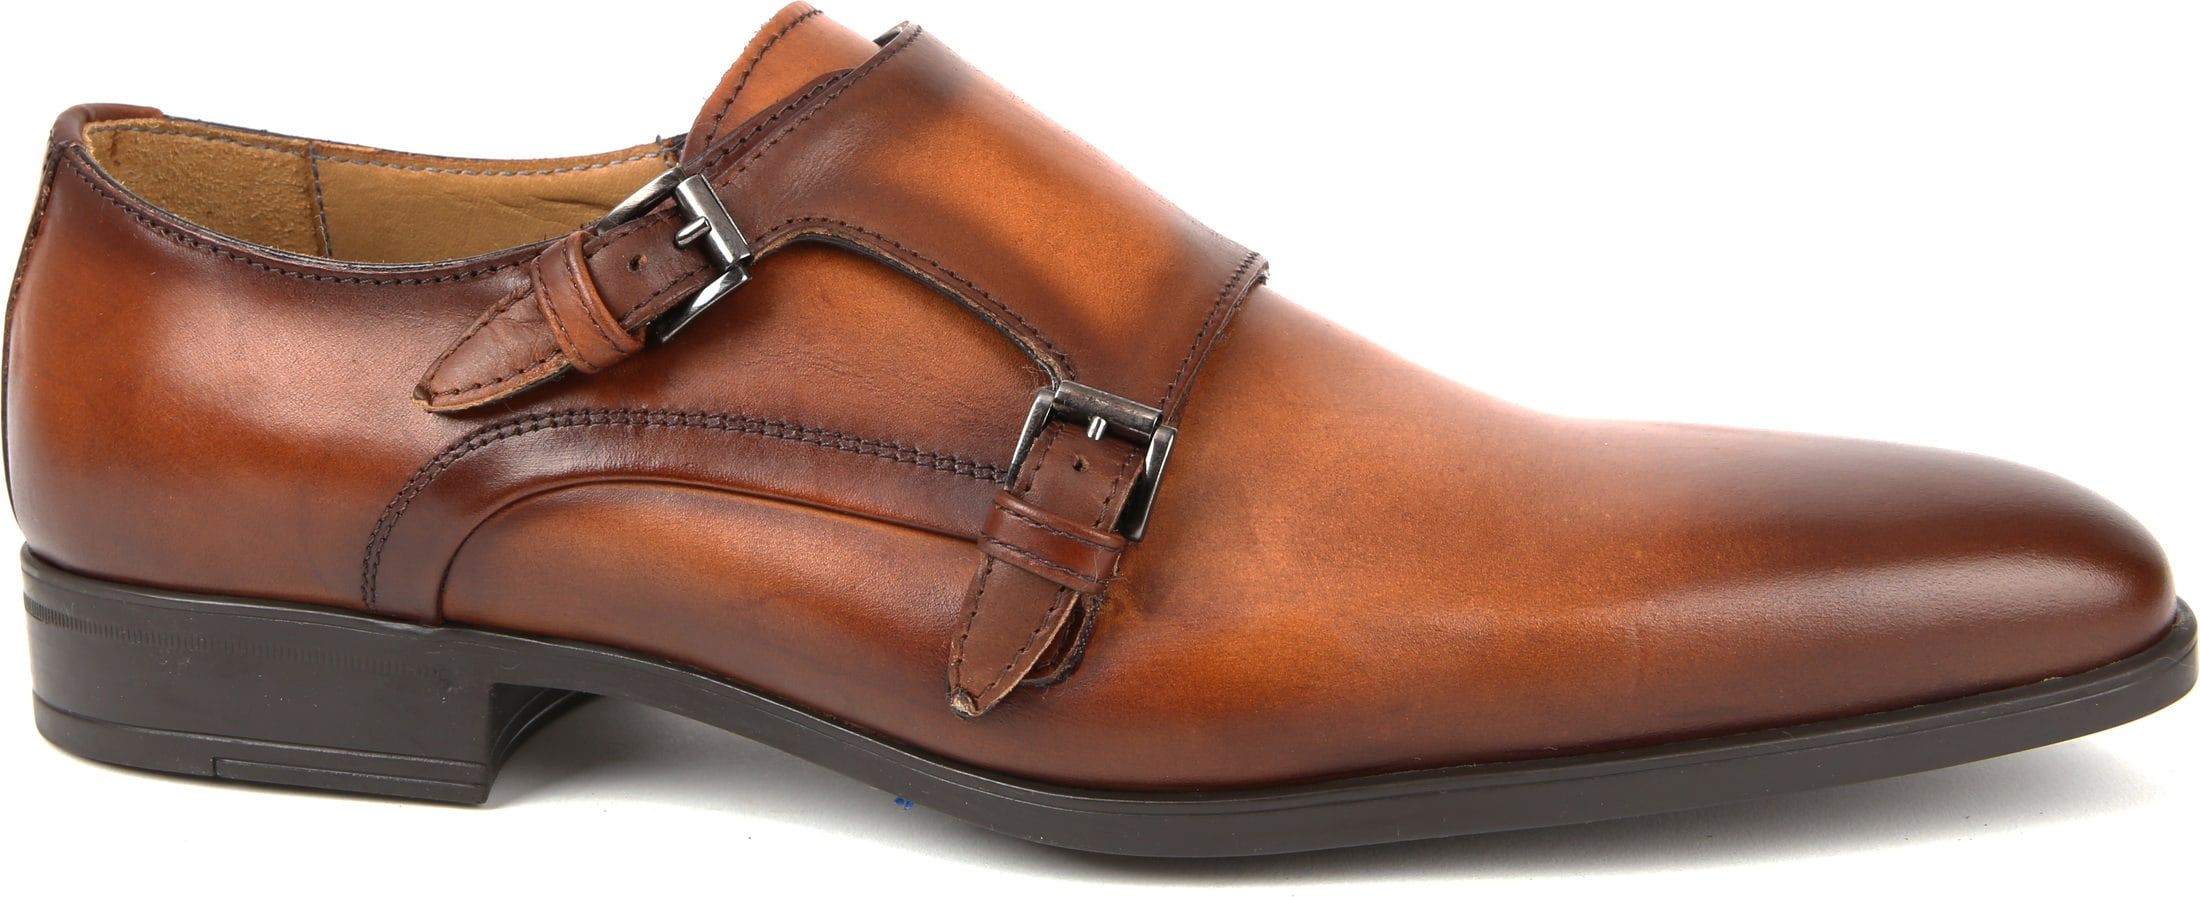 Giorgio Scandicci Shoe Monk Strap Brown size 9.5